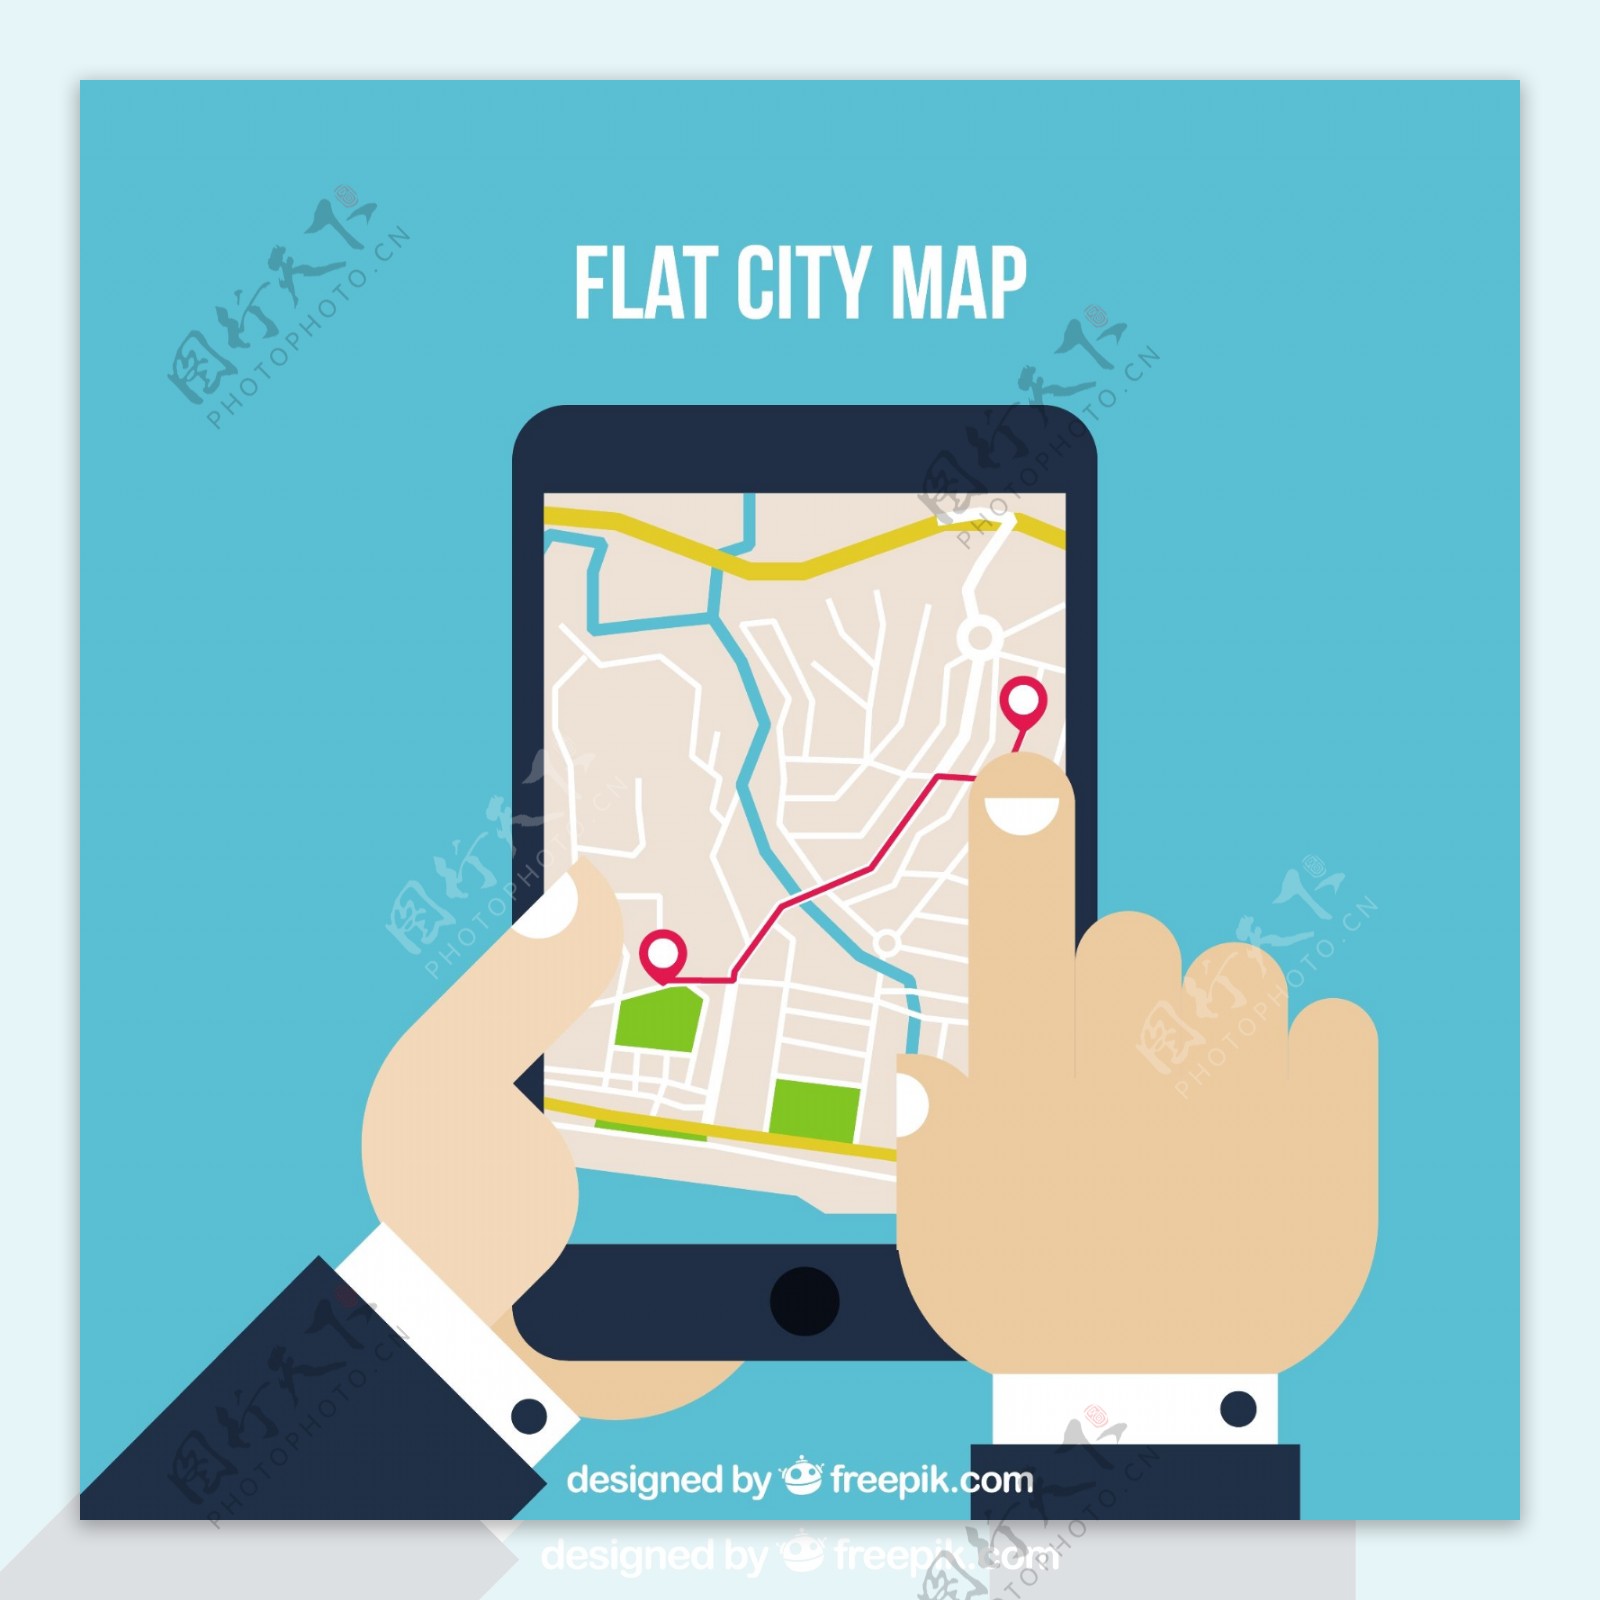 手操作ipad屏幕平面城市导航地图